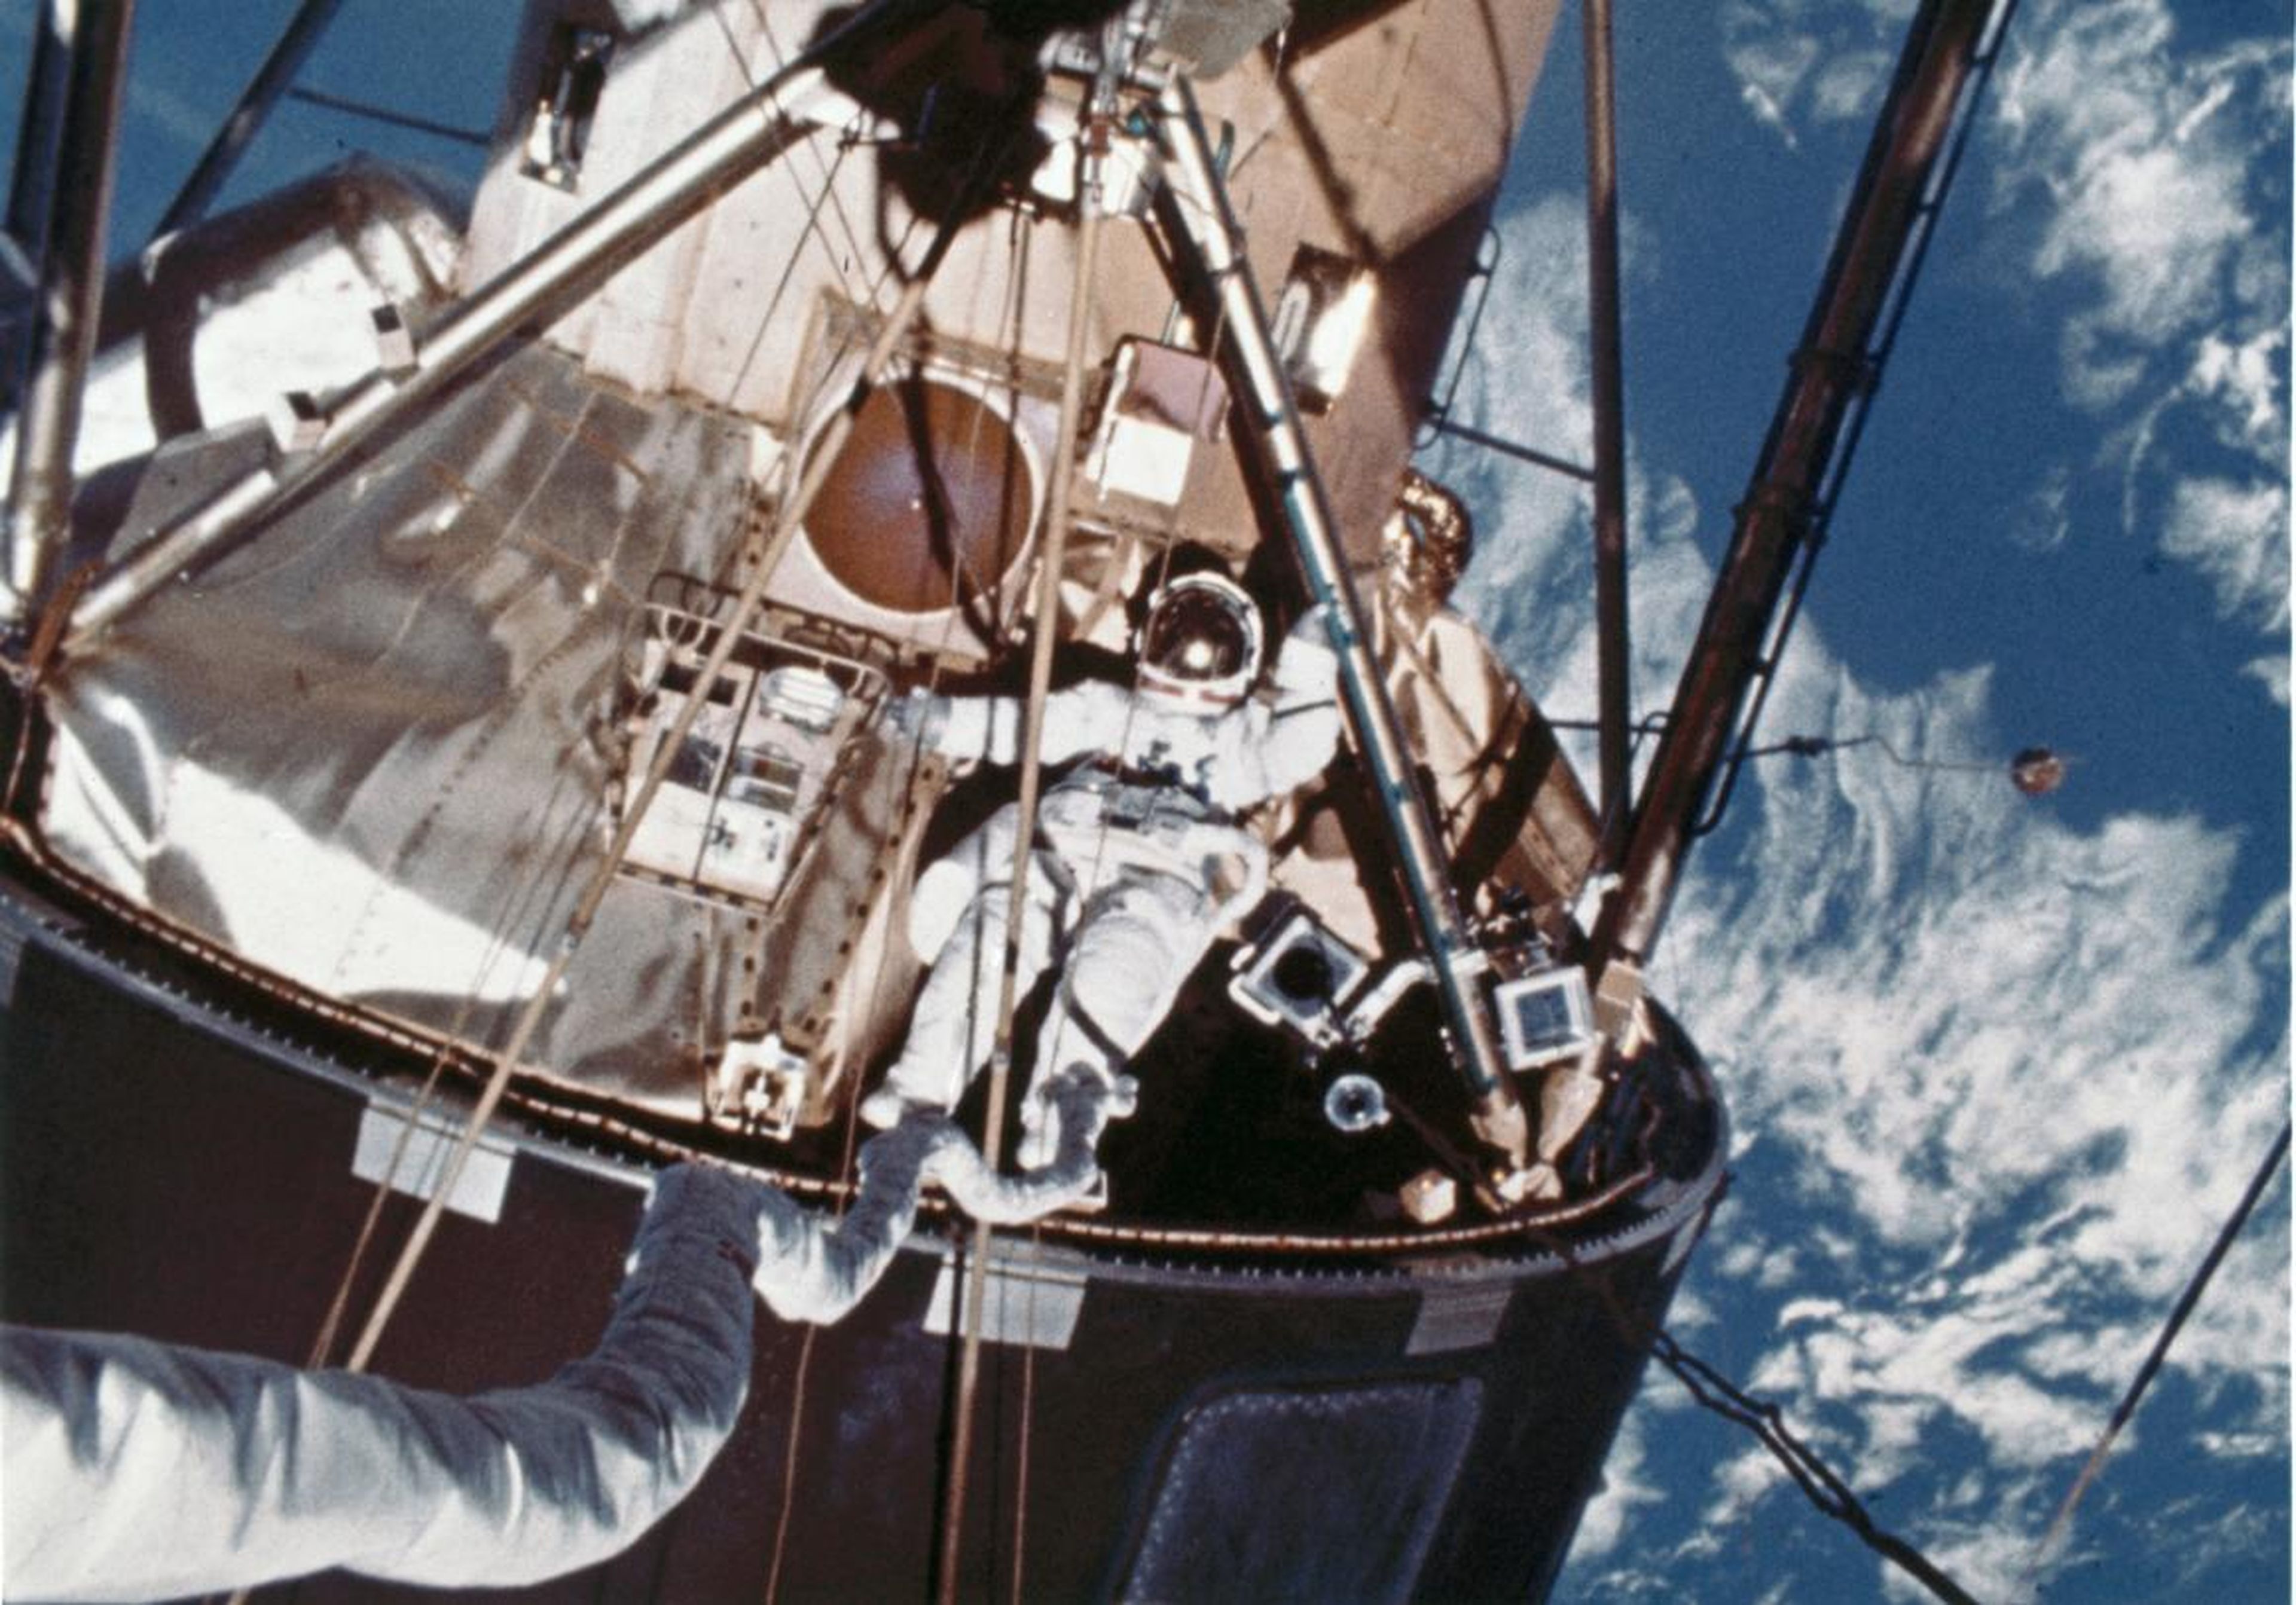 Durante la misión final de Skylab en 1974, un miembro de la tripulación flotó fuera del laboratorio en órbita.